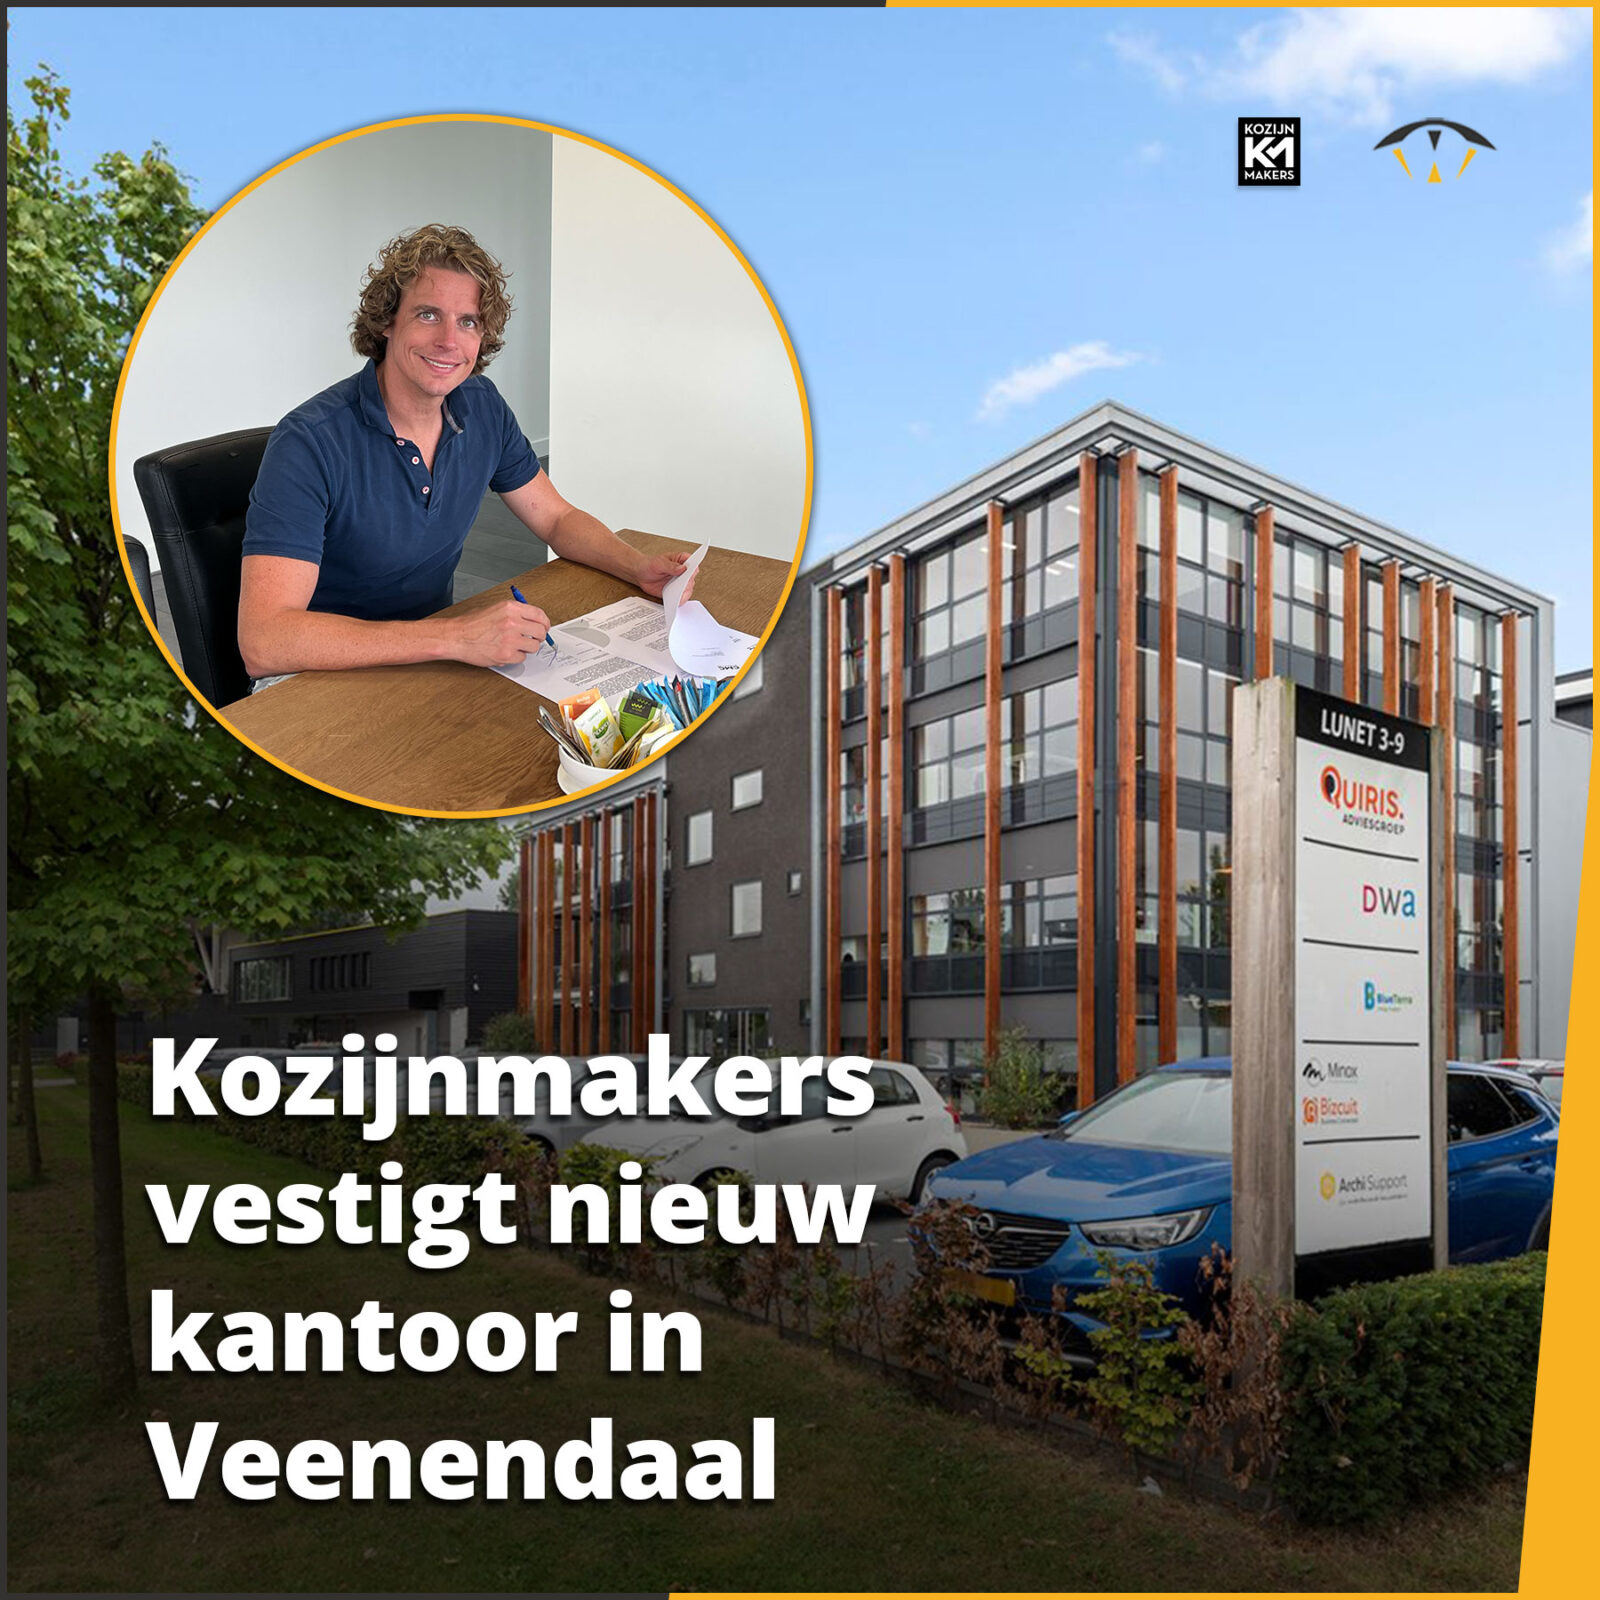 Kozijnmakers vestigt nieuw kantoor in Veenendaal